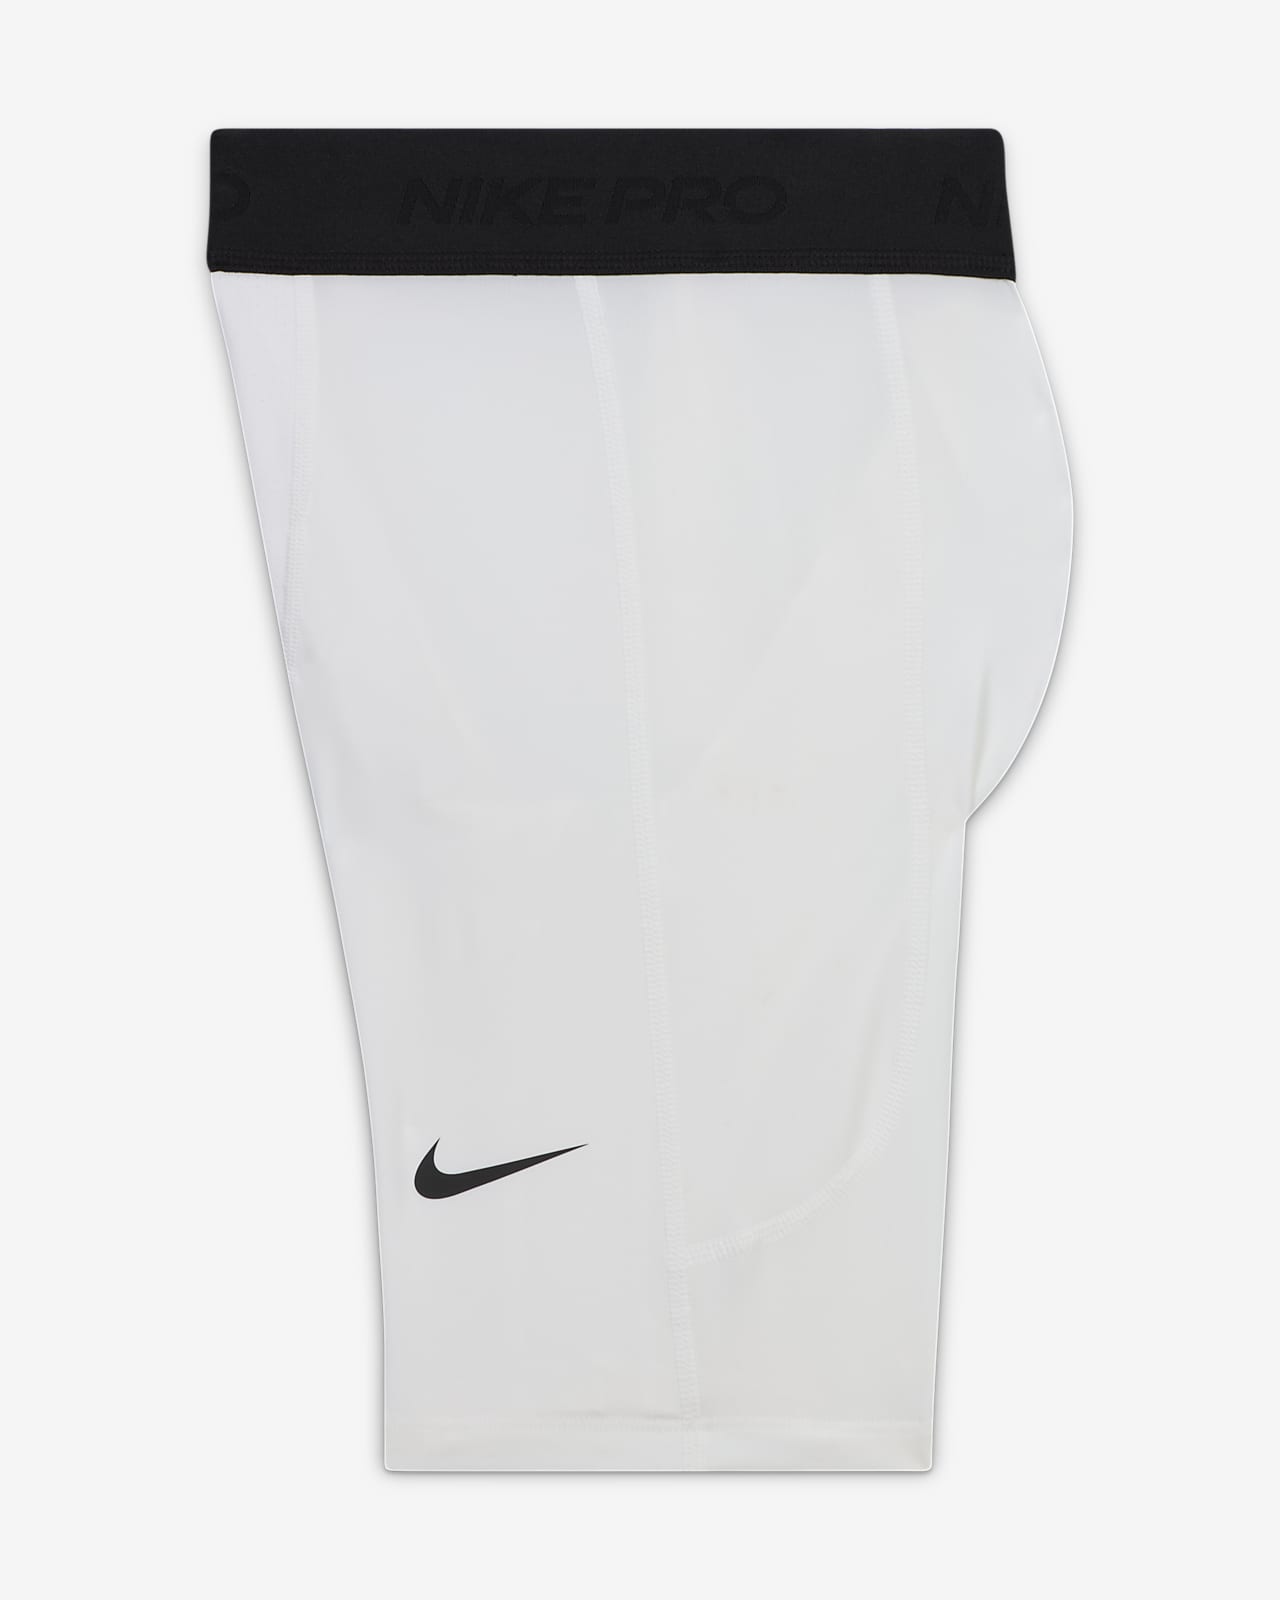 Nike Pro Big Kids' (Boys') Dri-FIT Shorts (Extended Size)